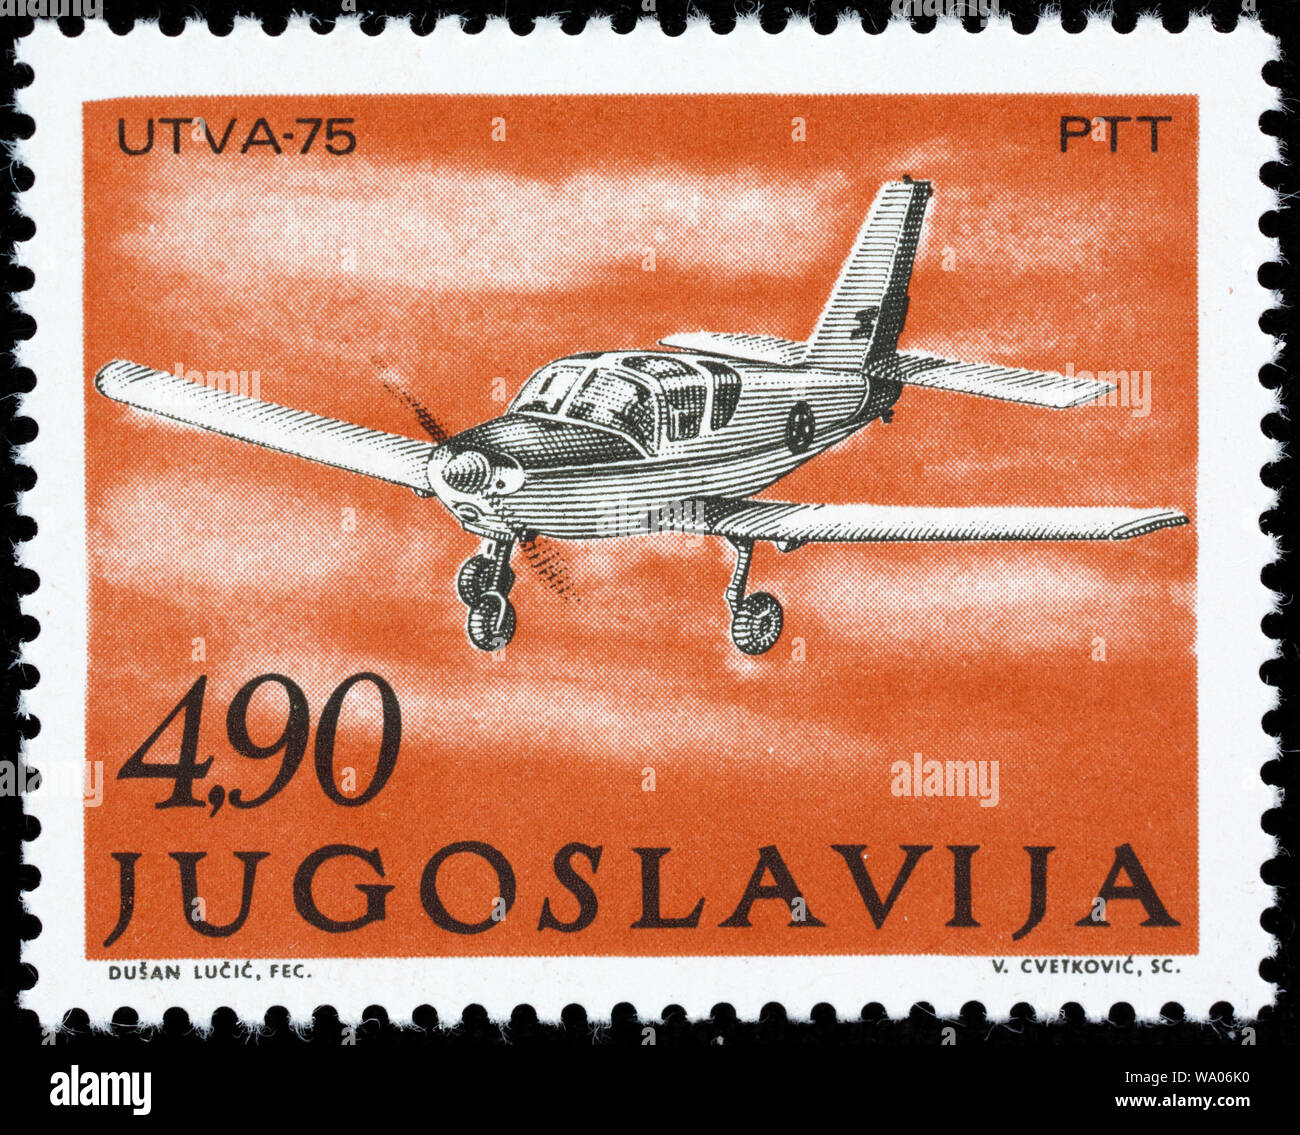 Educational aircraft UTVA-75 (1975), postage stamp, Yugoslavia, 1978 Stock Photo